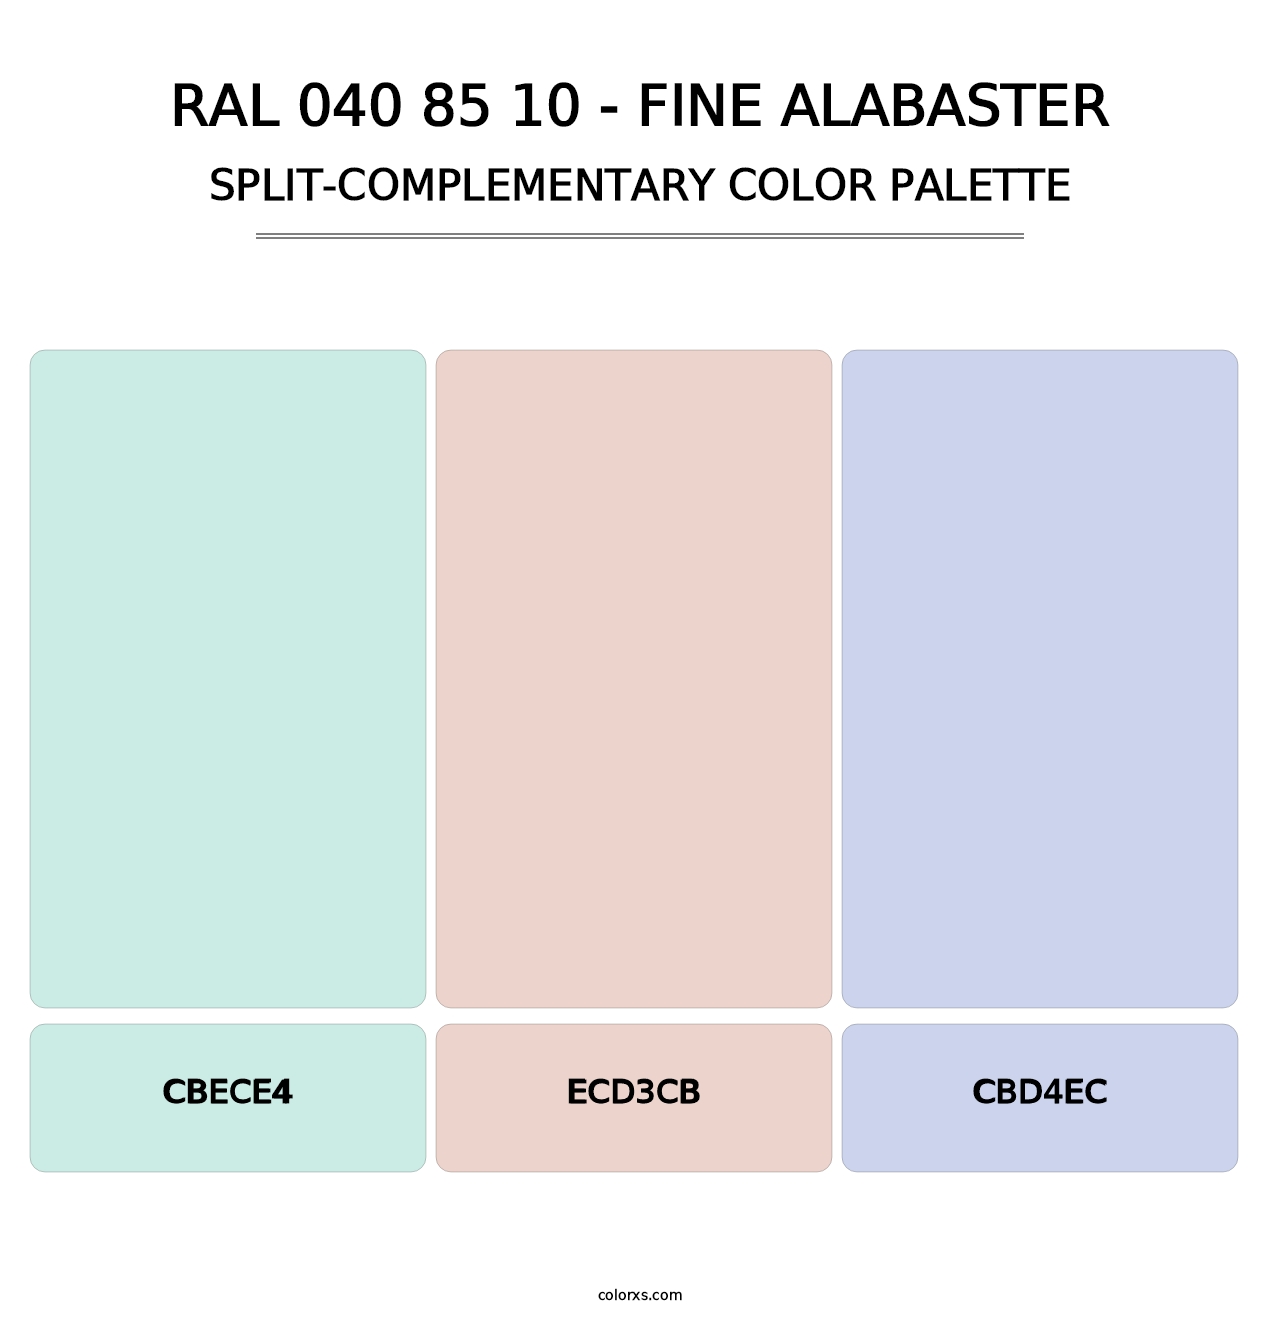 RAL 040 85 10 - Fine Alabaster - Split-Complementary Color Palette